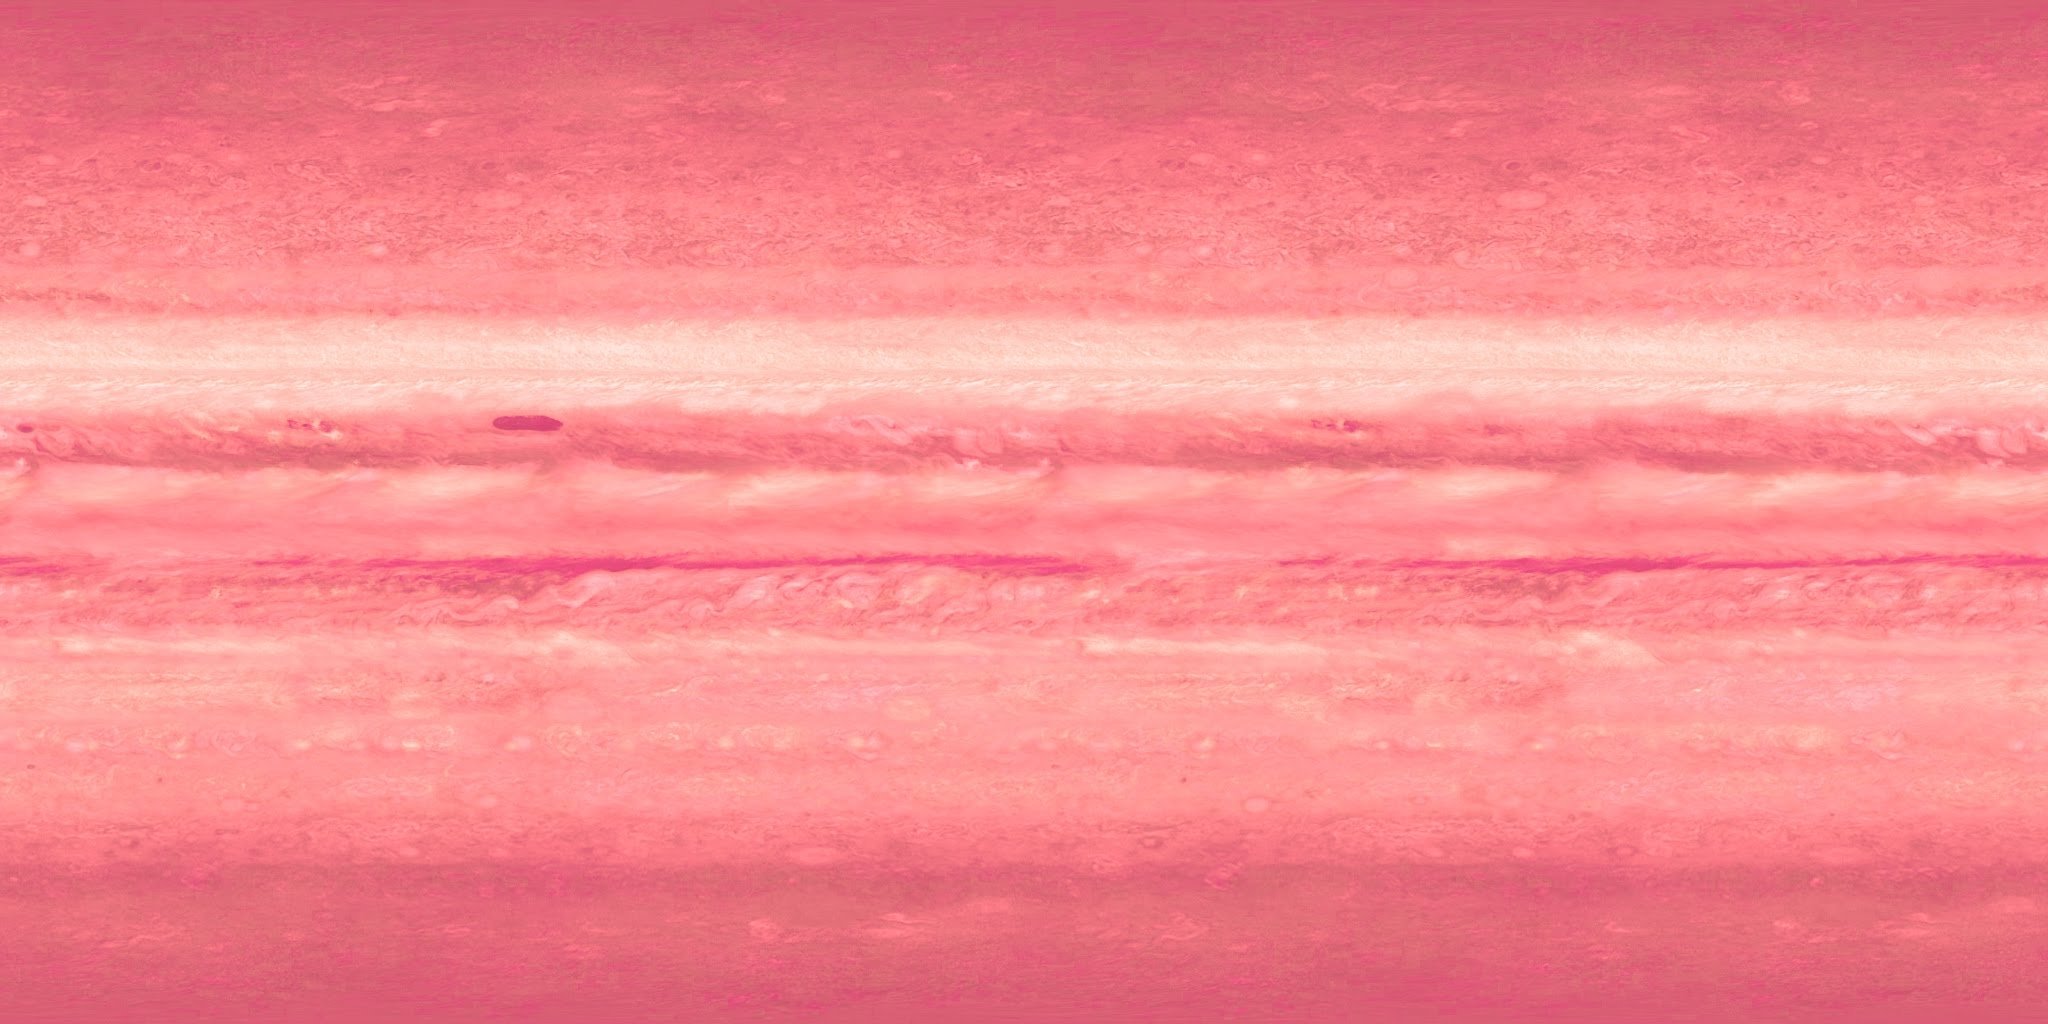 Текстура планеты Юпитер